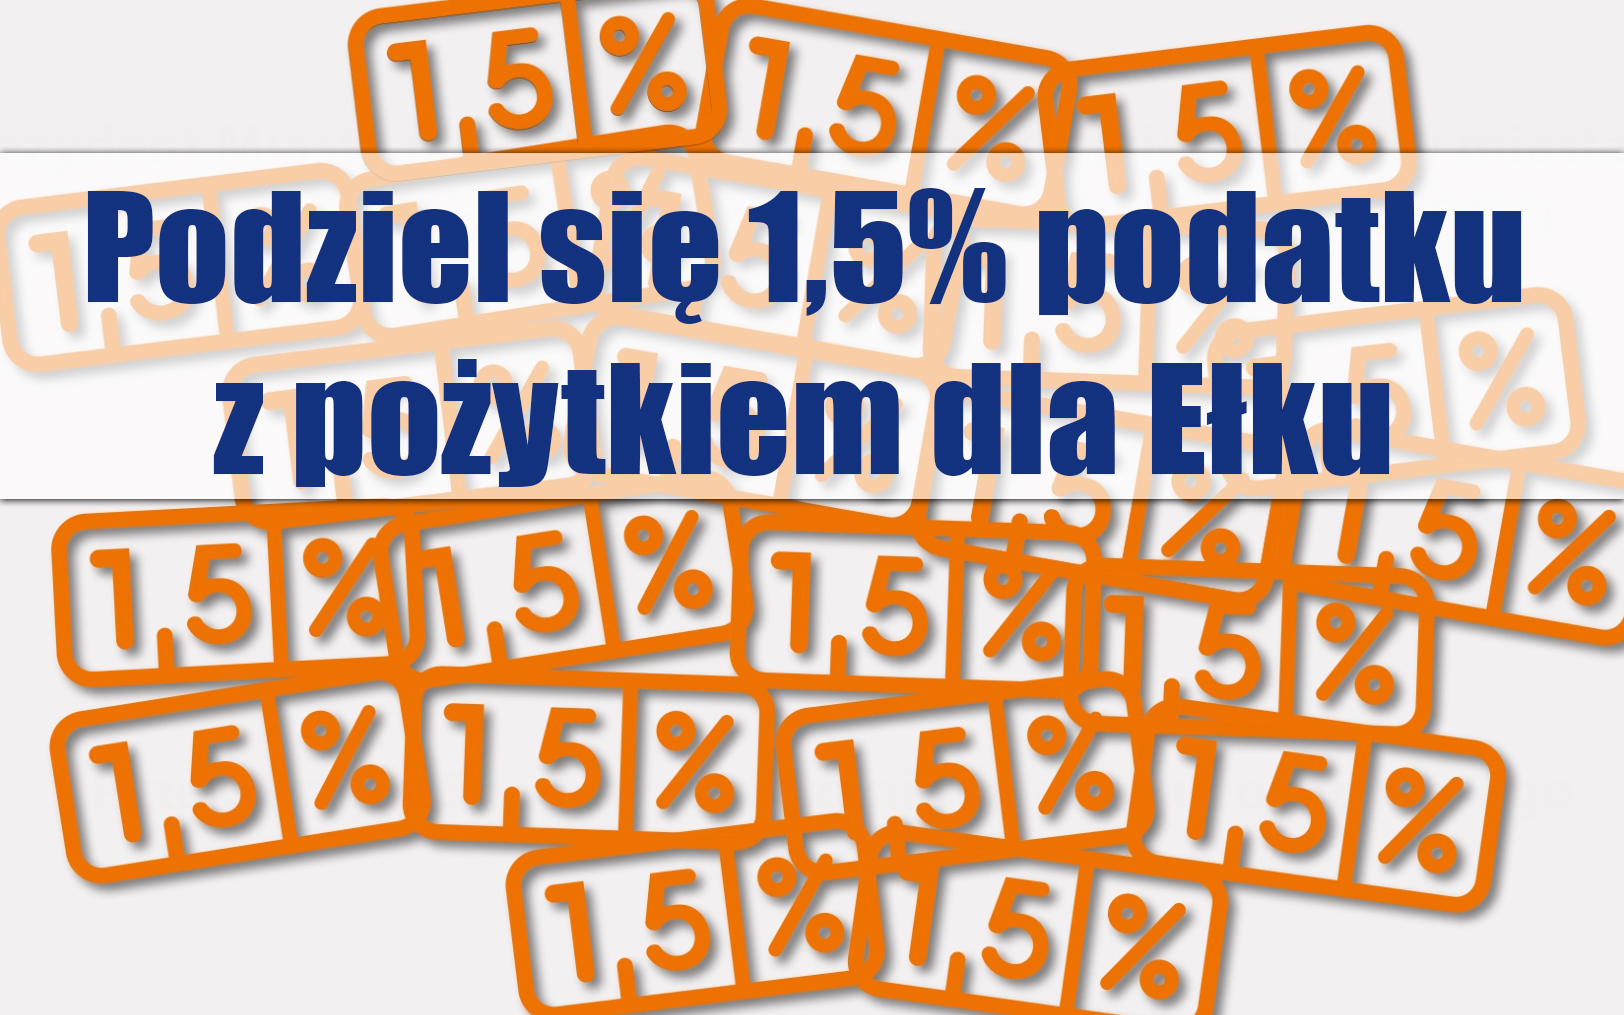 Imposta dell'1,5% a favore di Ełk